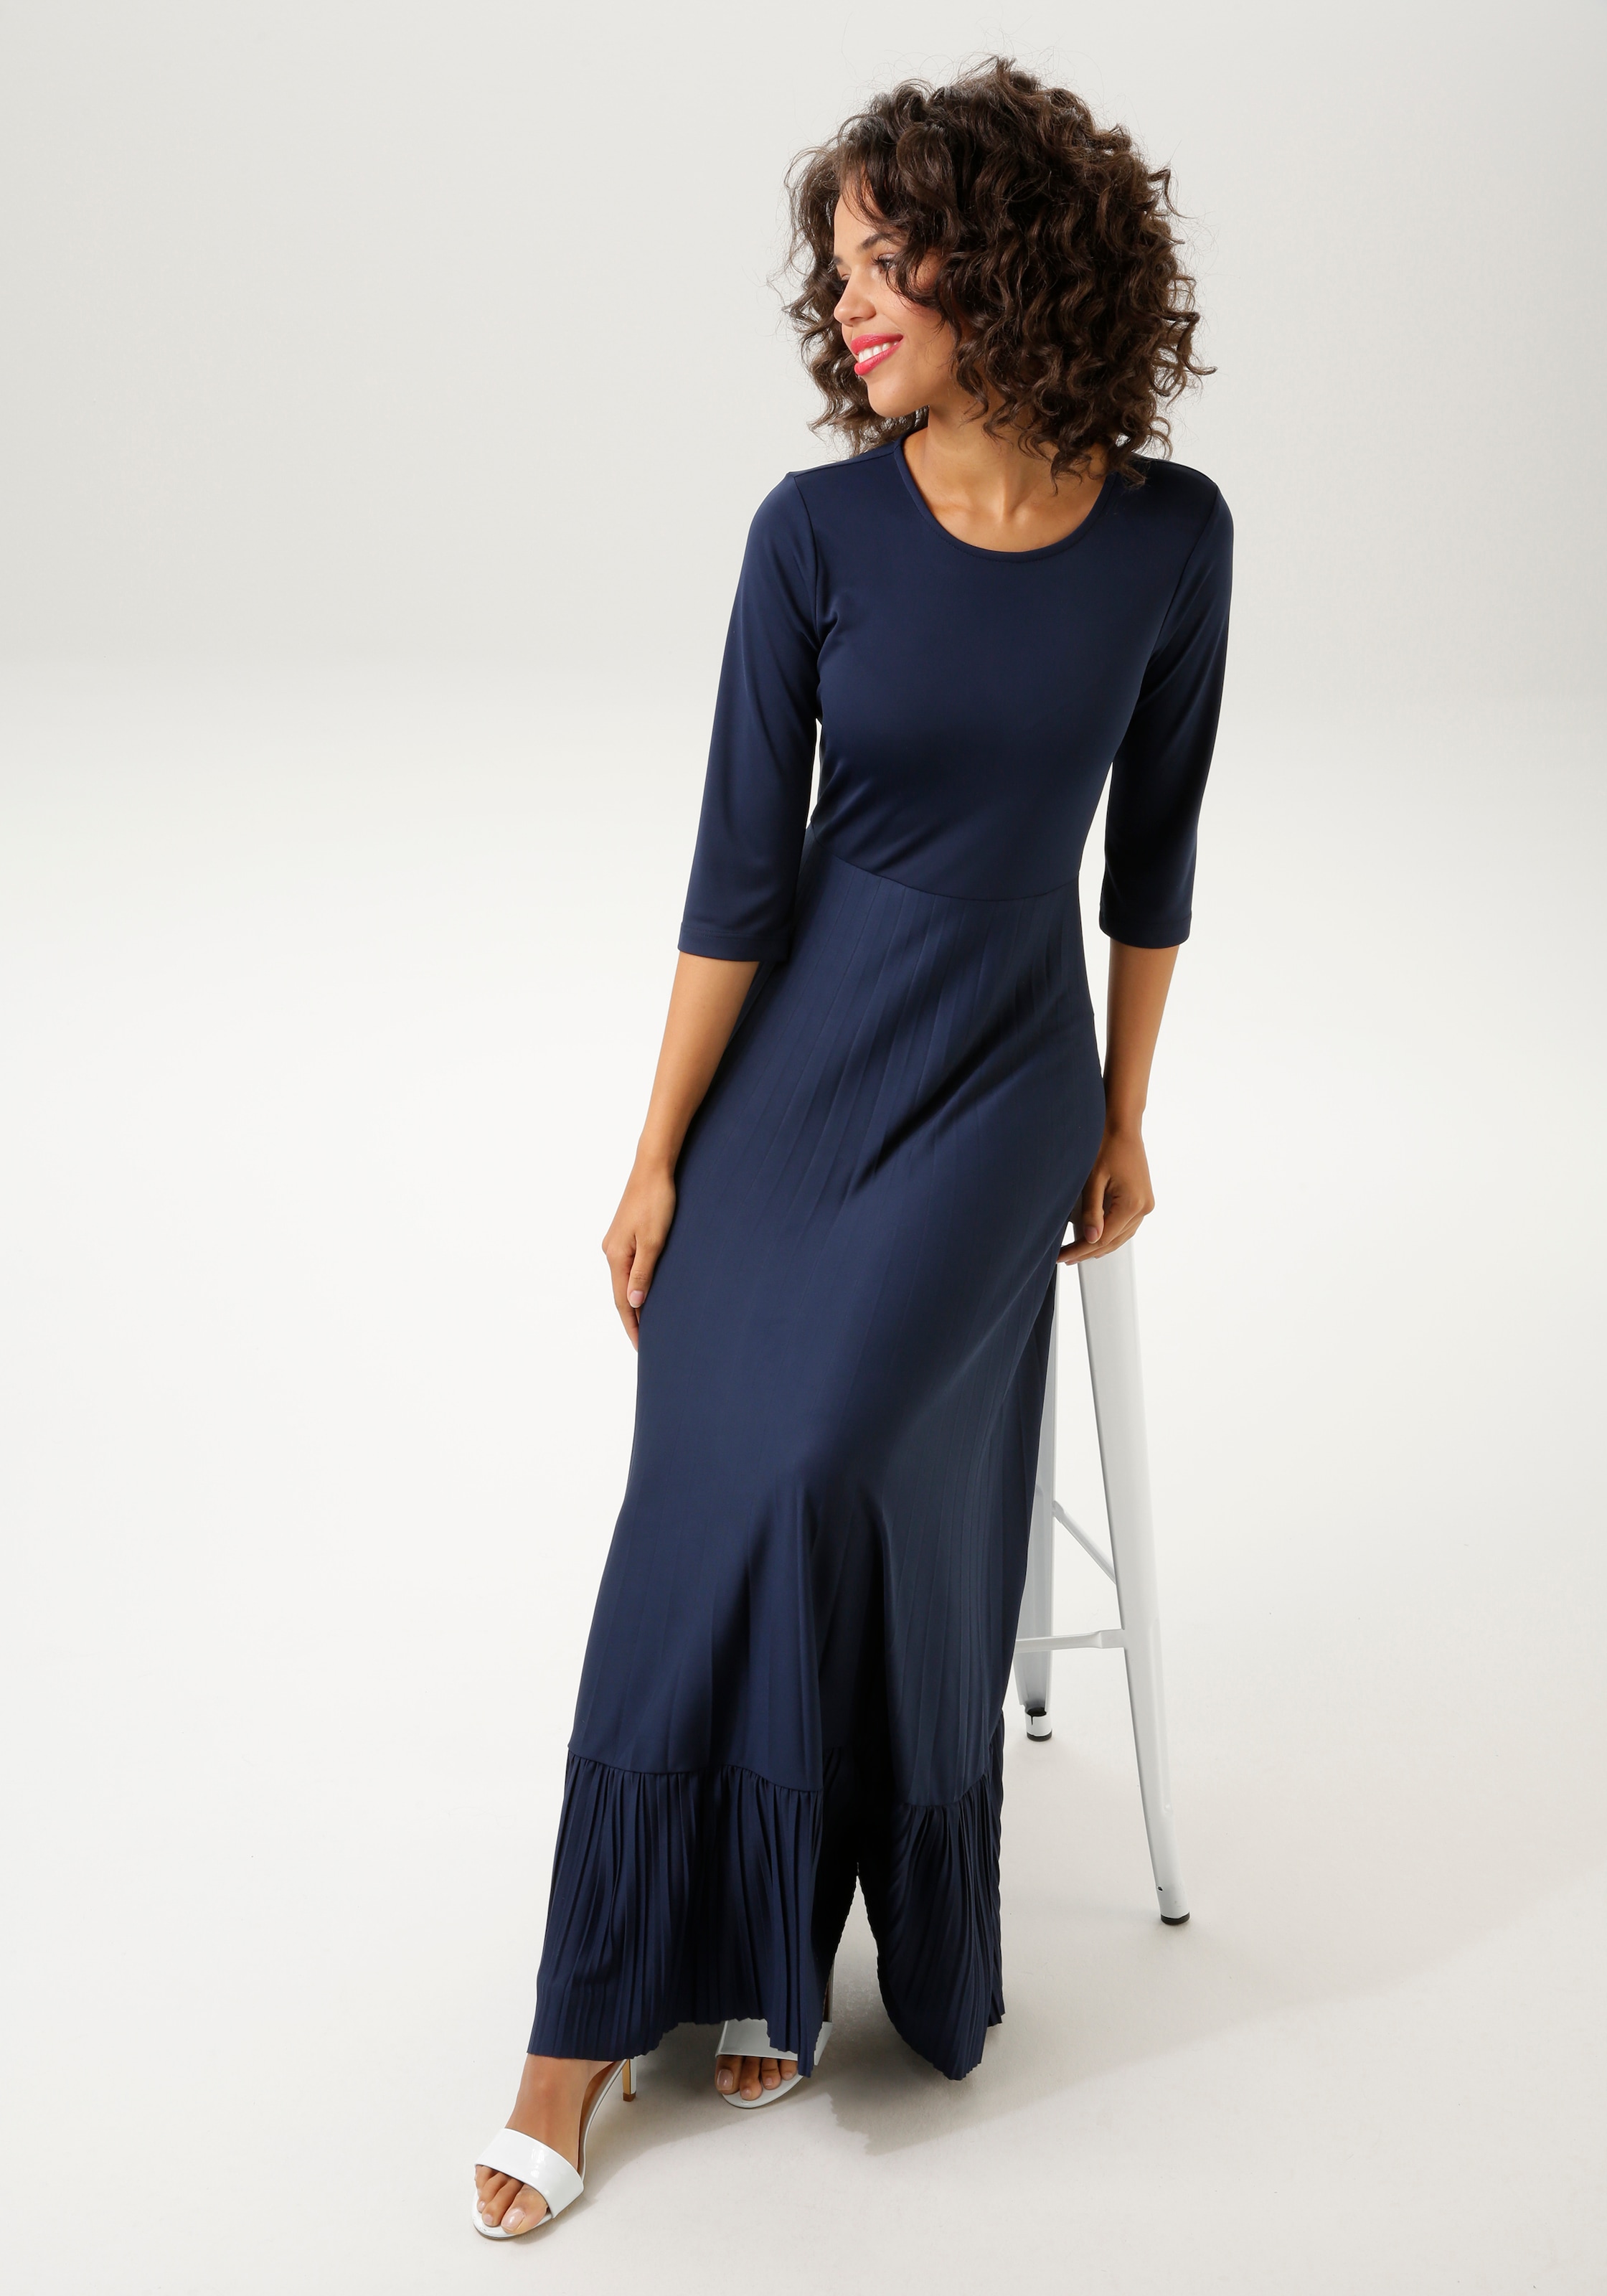 Blaues Kleid in vielen Nuancen | Jelmoli-Versand